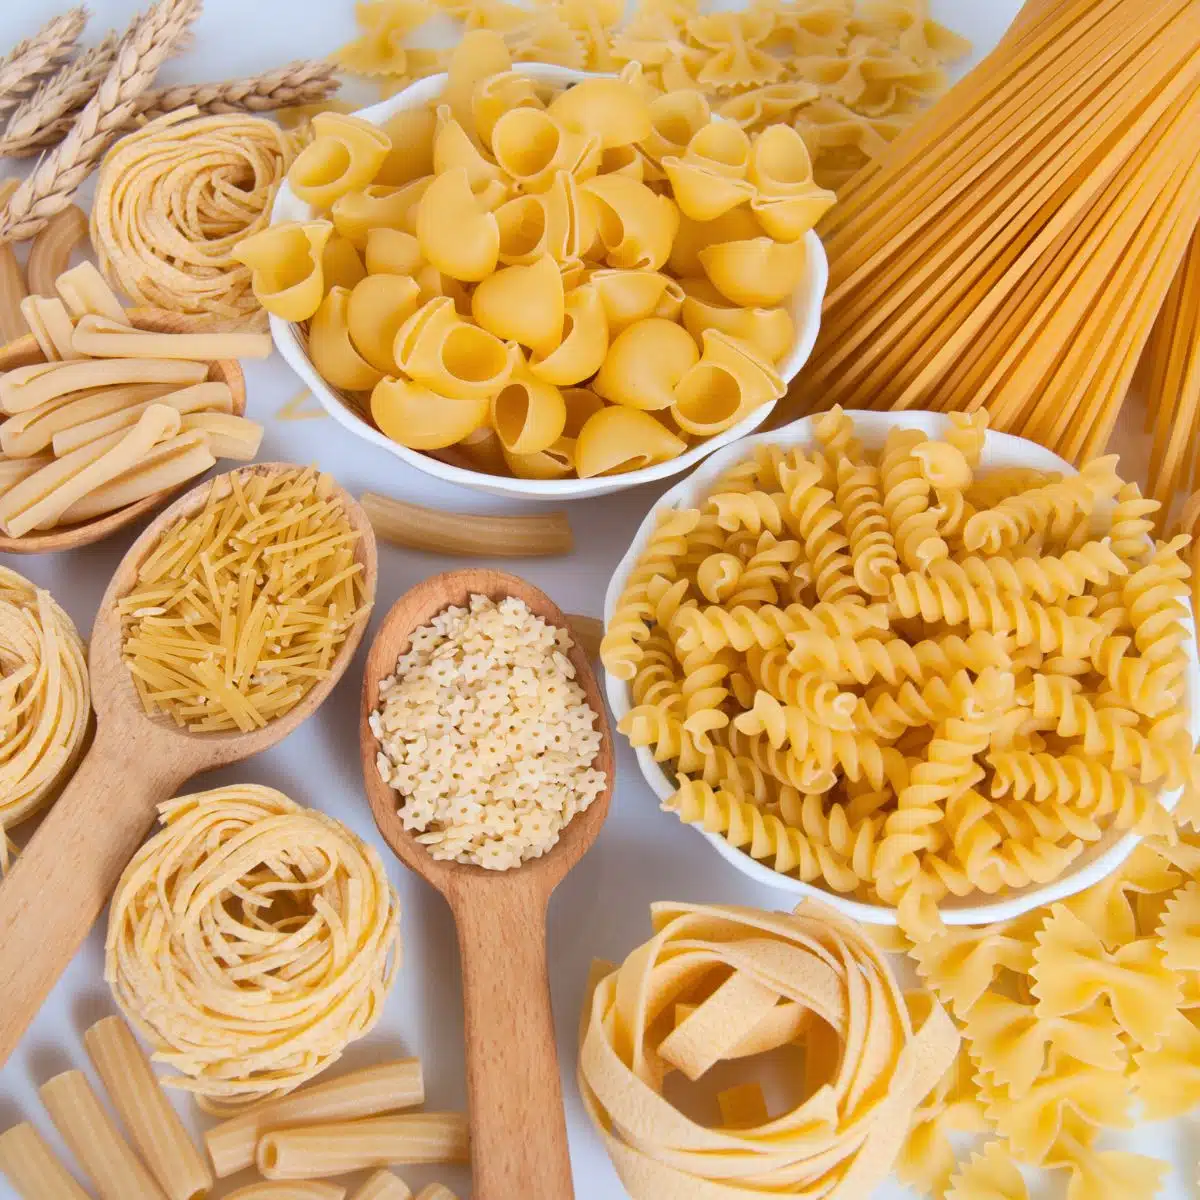 सफेद पृष्ठभूमि पर विभिन्न प्रकार के पास्ता की चौकोर छवि।